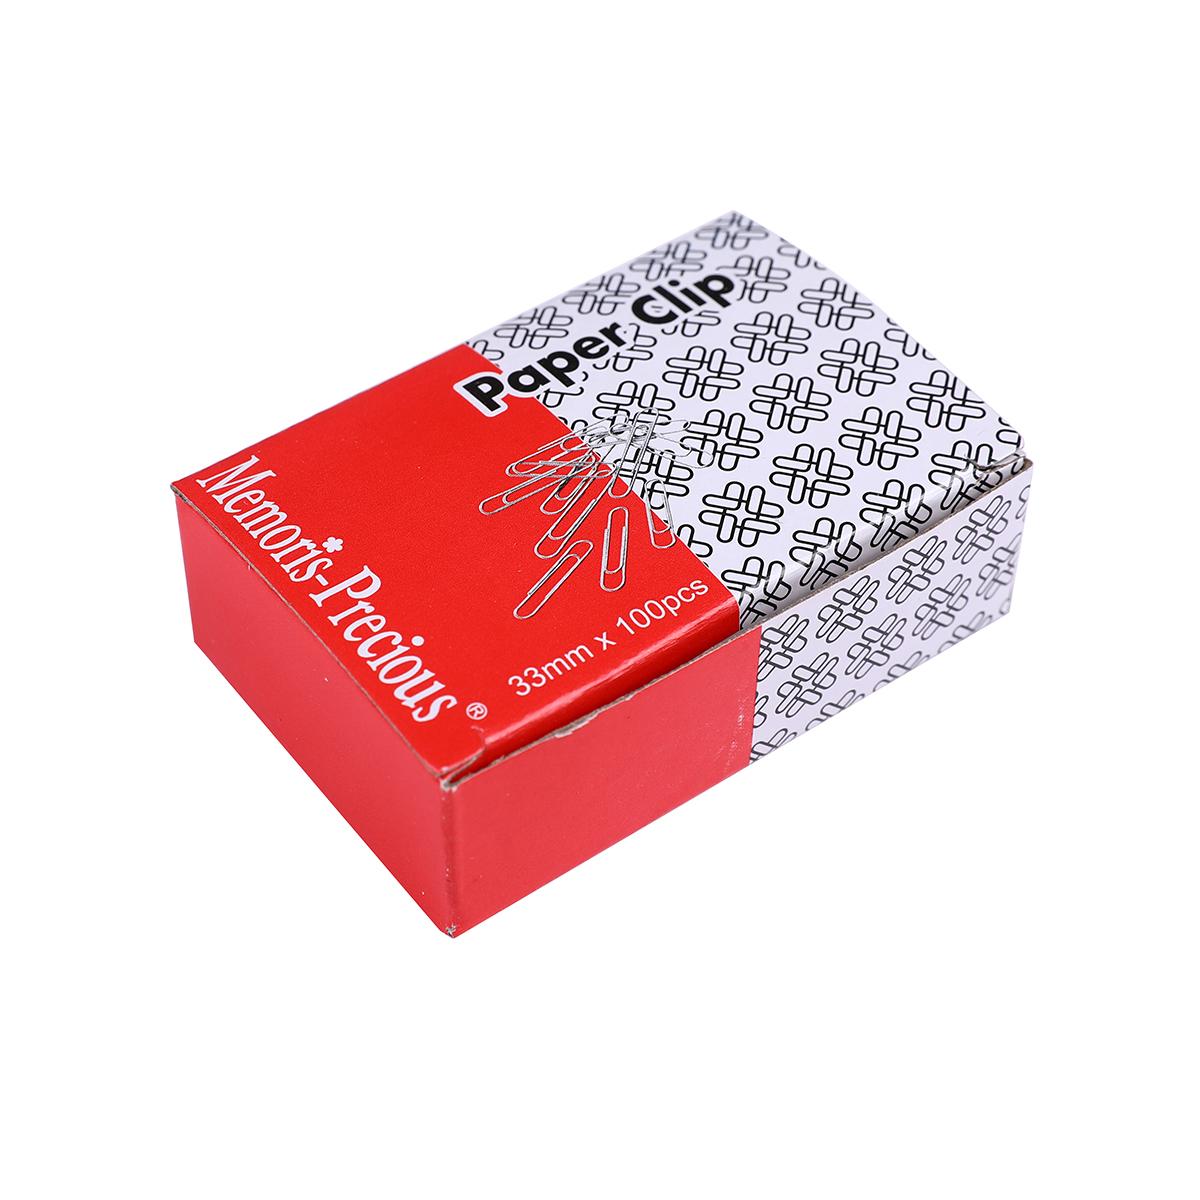 Agrafe Memoris-Precious, 33 mm, zincate, 10 cutii x 100 bucati/cutie